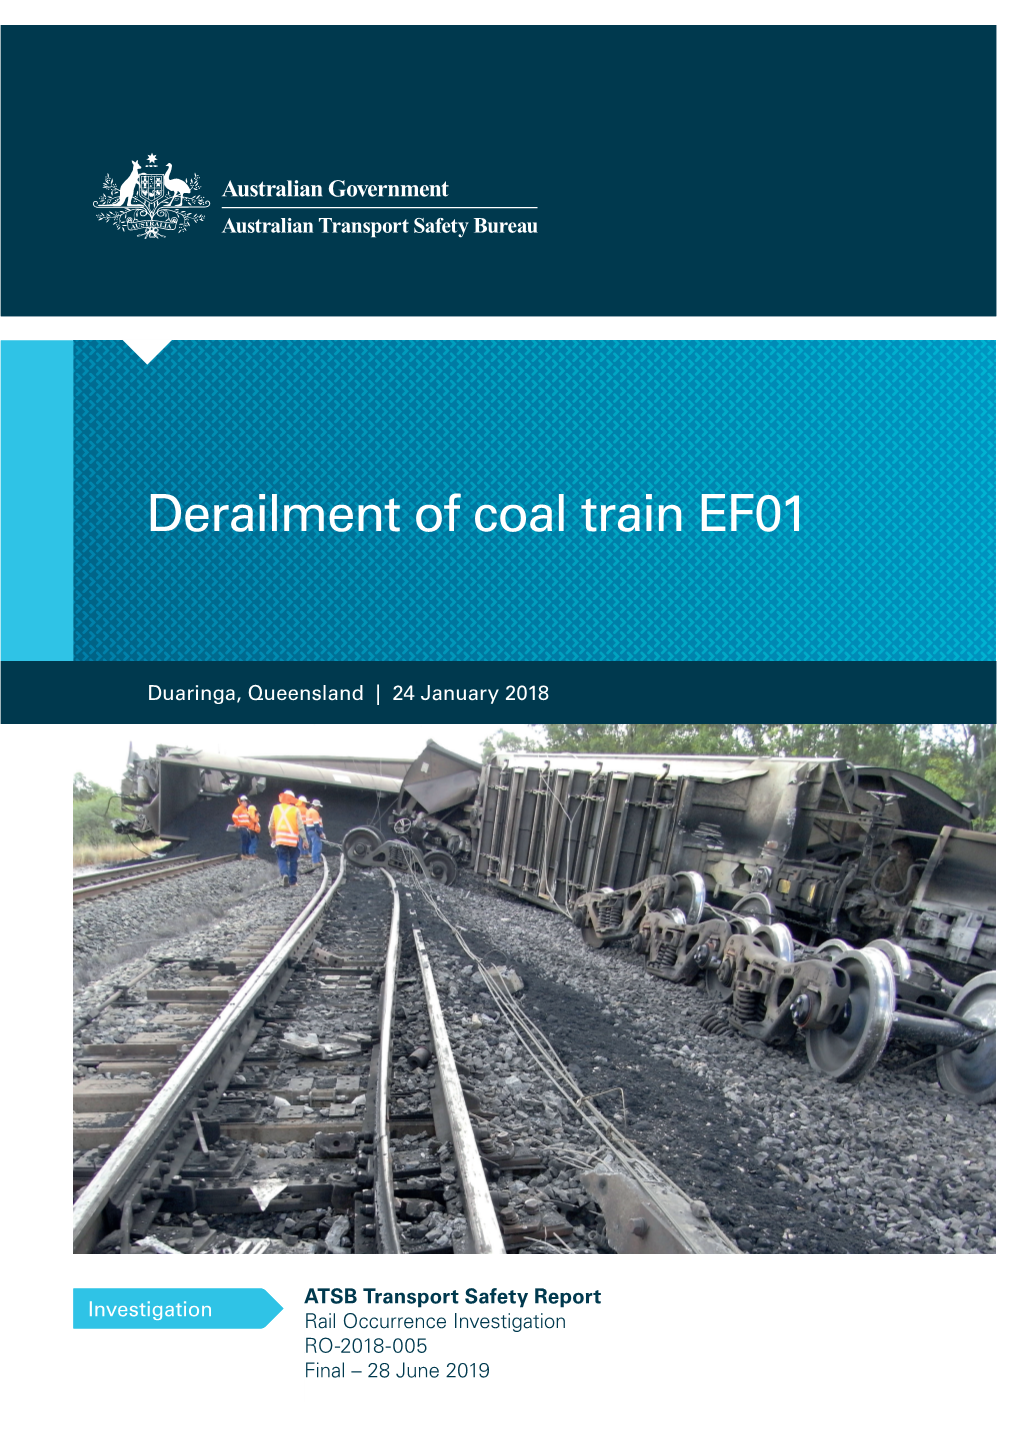 Derailment of Coal Train EF01 at Duaringa, Queensland, on 24